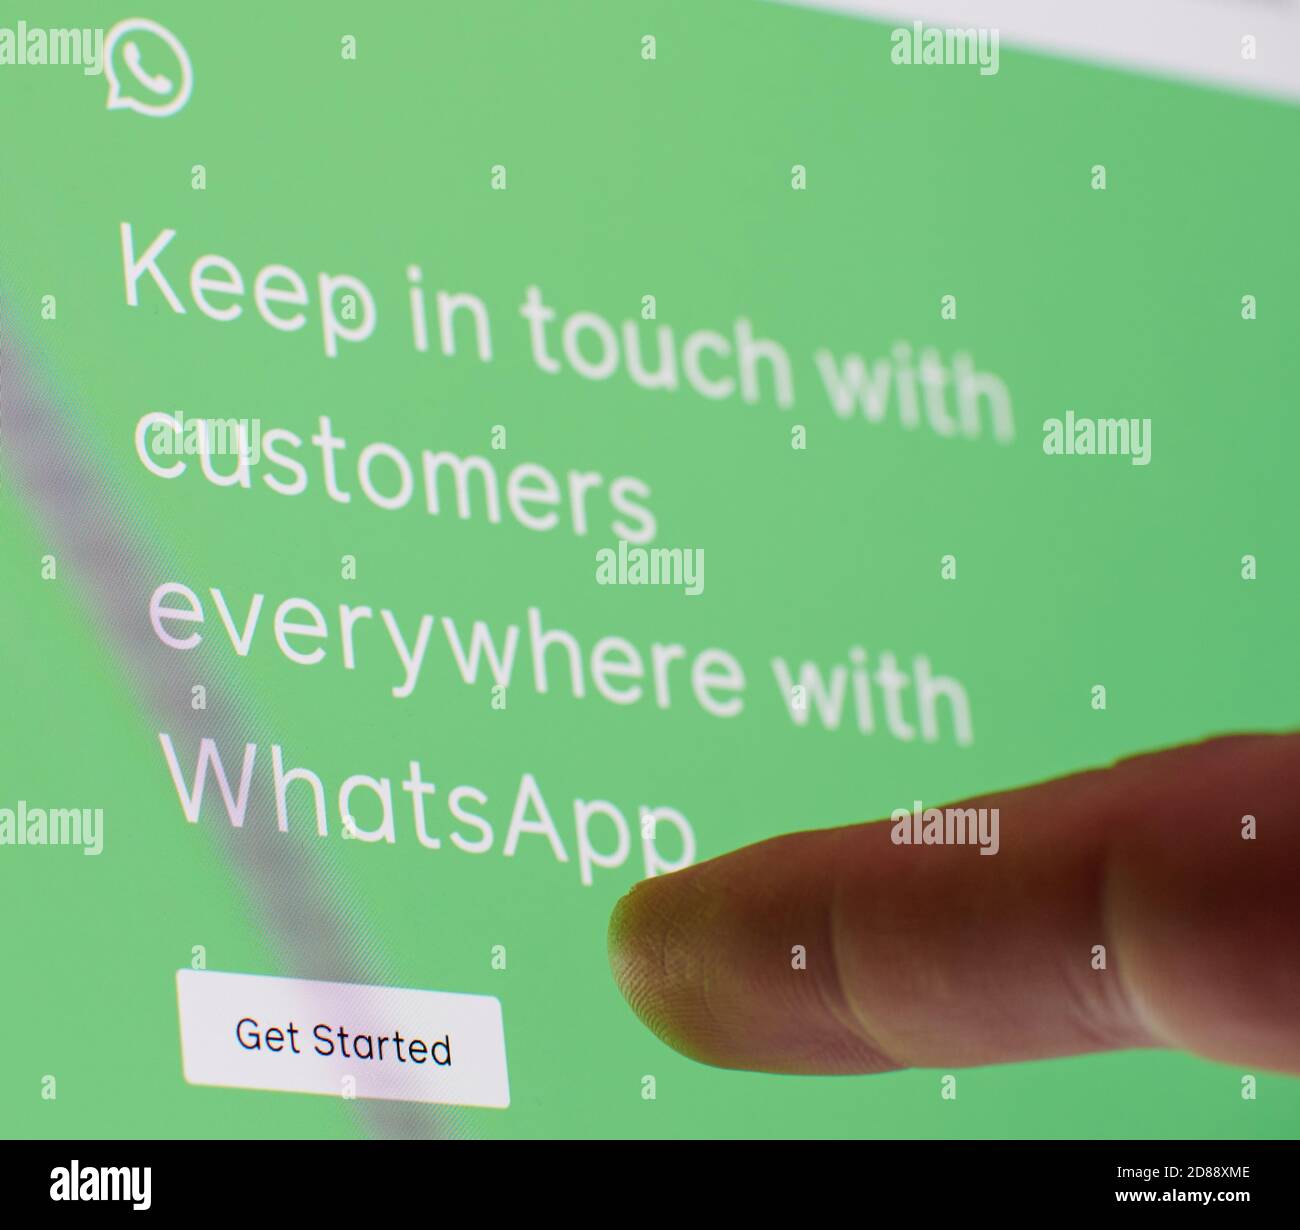 New york, USA - 27 ottobre 2020: Creazione di annunci nel servizio Whatsapp schermo a sfioramento visualizzazione ravvicinata Foto Stock